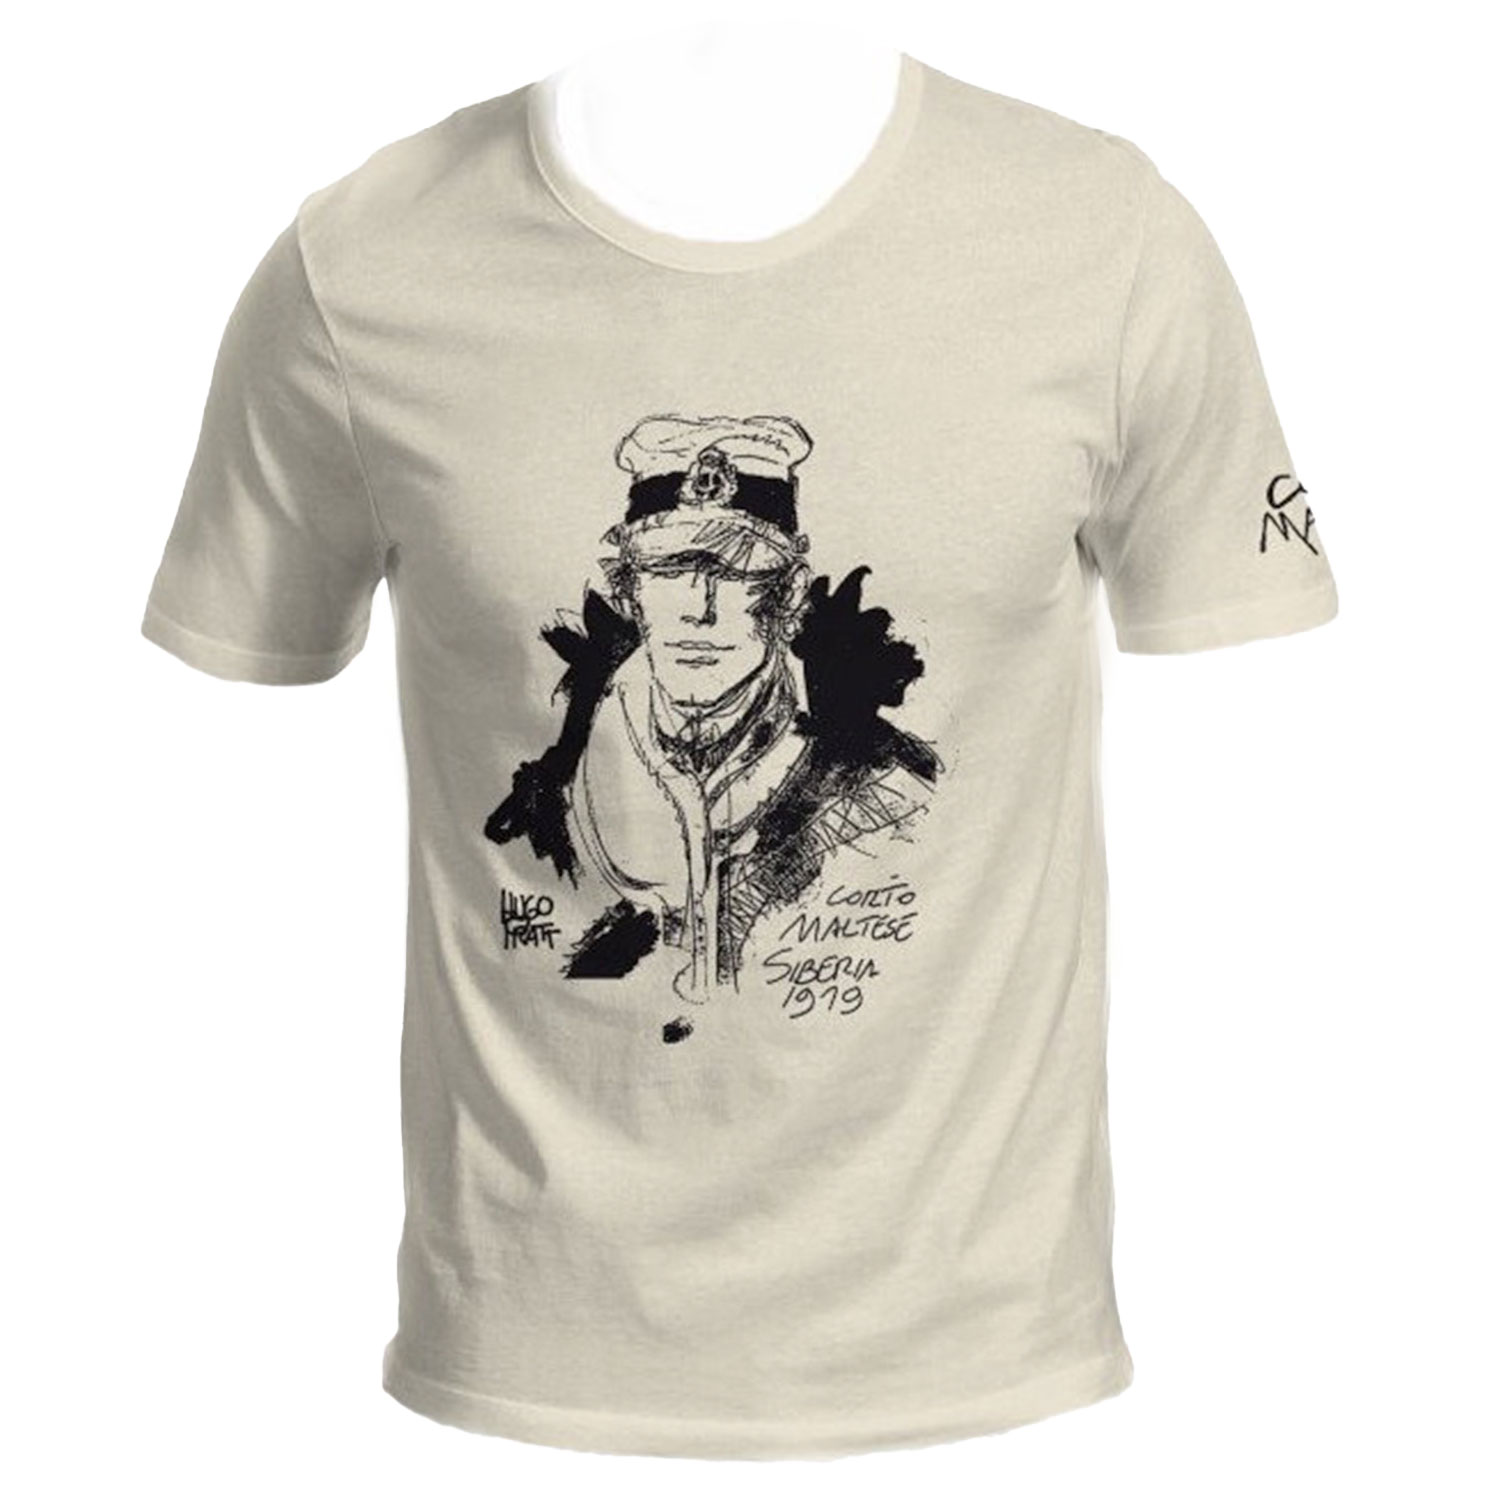 Hugo Pratt T-shirt : Corto Maltese , Siberia - Ecru - Size M